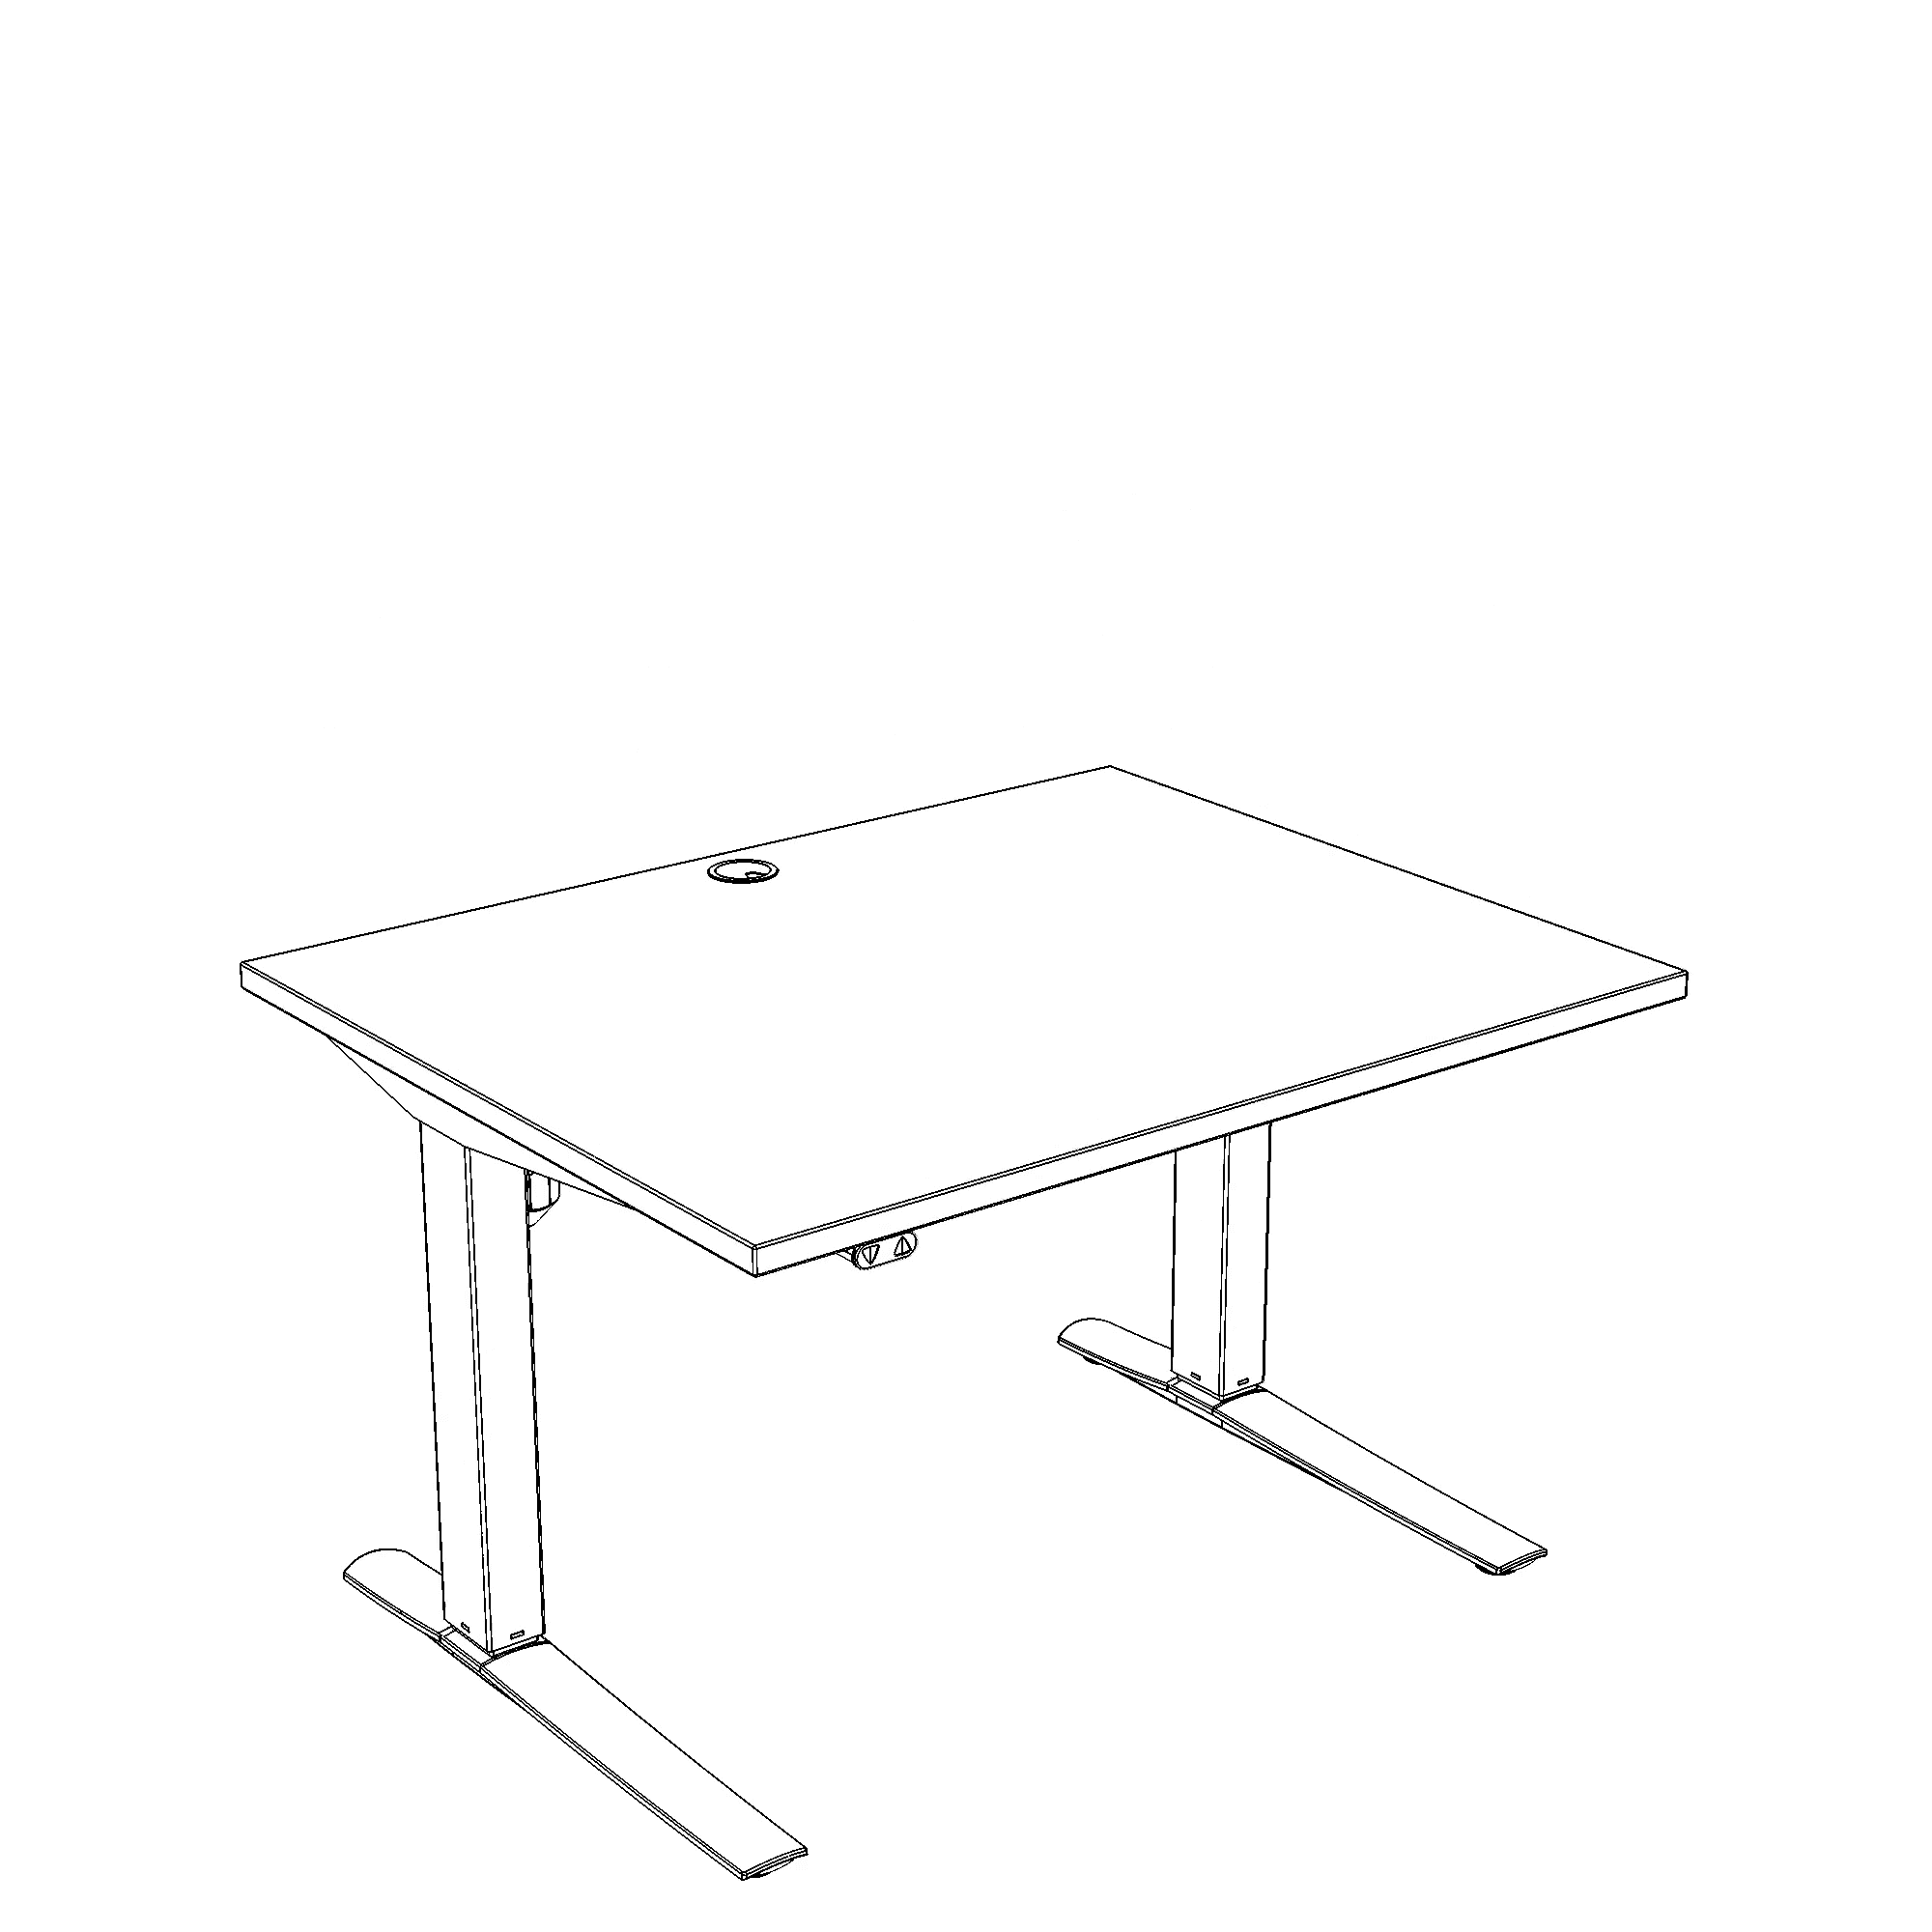 Schreibtisch steh/sitz | 80x80 cm | Buche mit silbernem Gestell